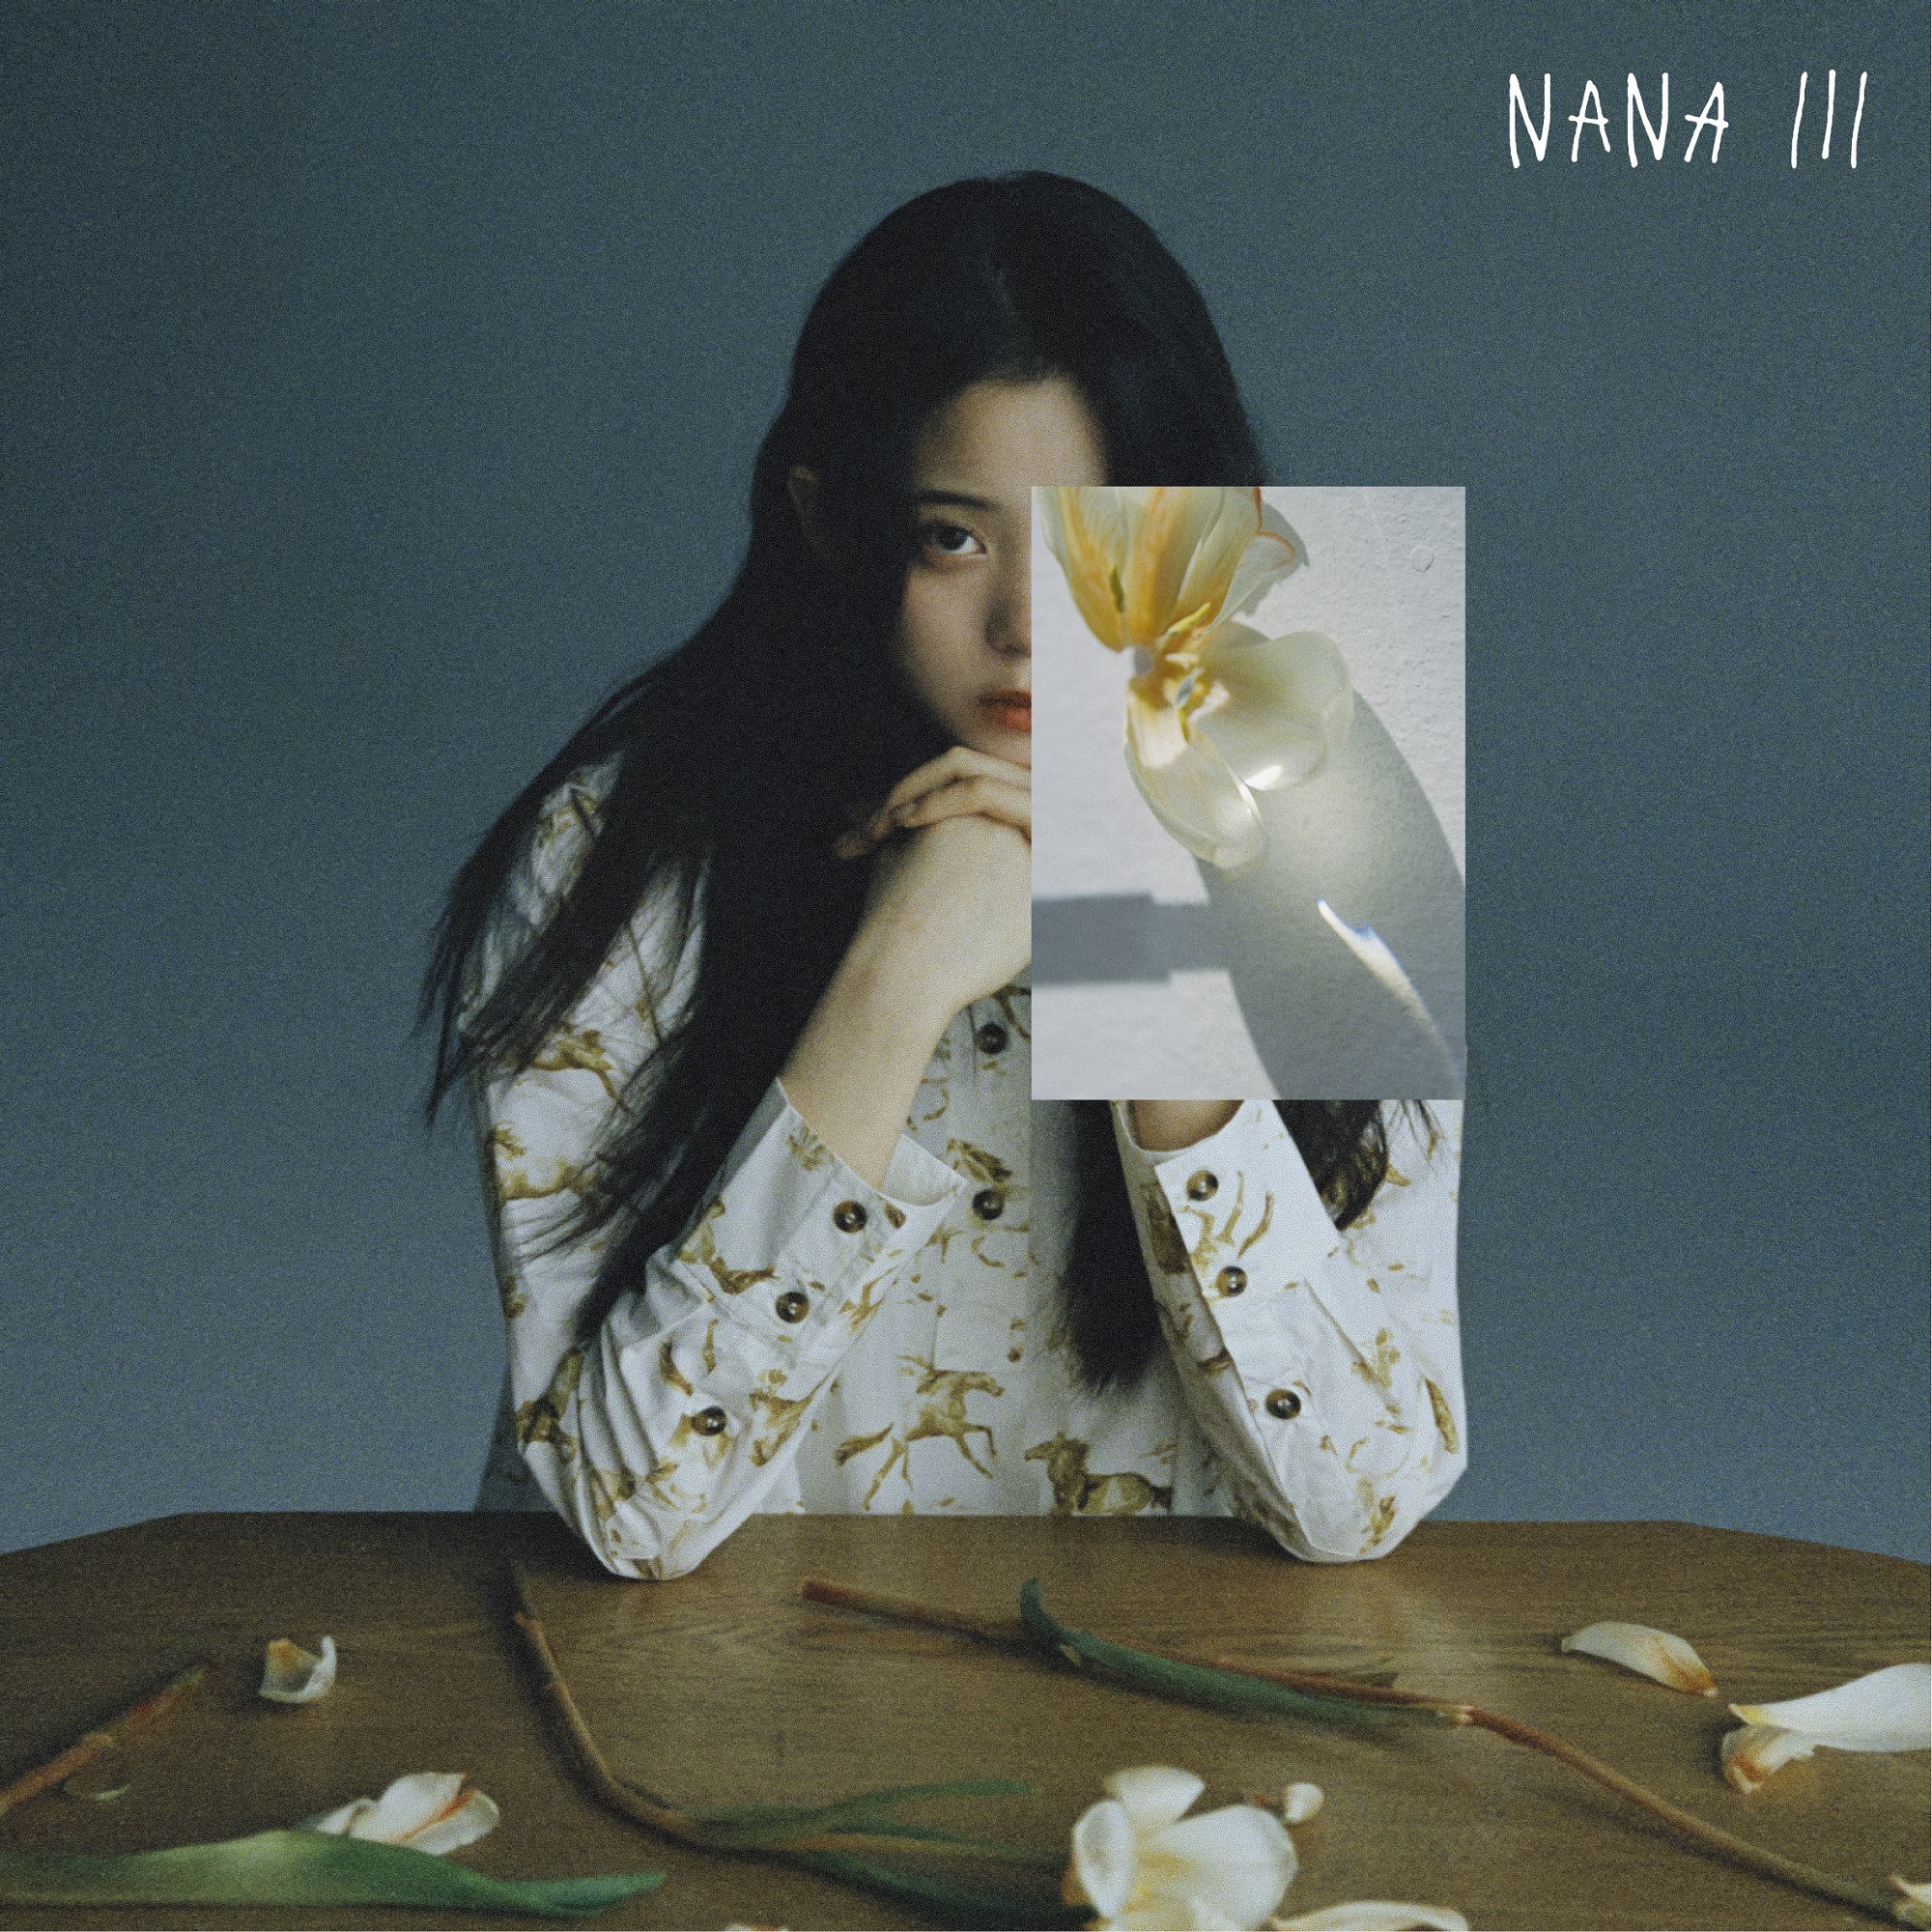 欧阳娜娜音乐计划第三篇章《NANAIII》正式上线